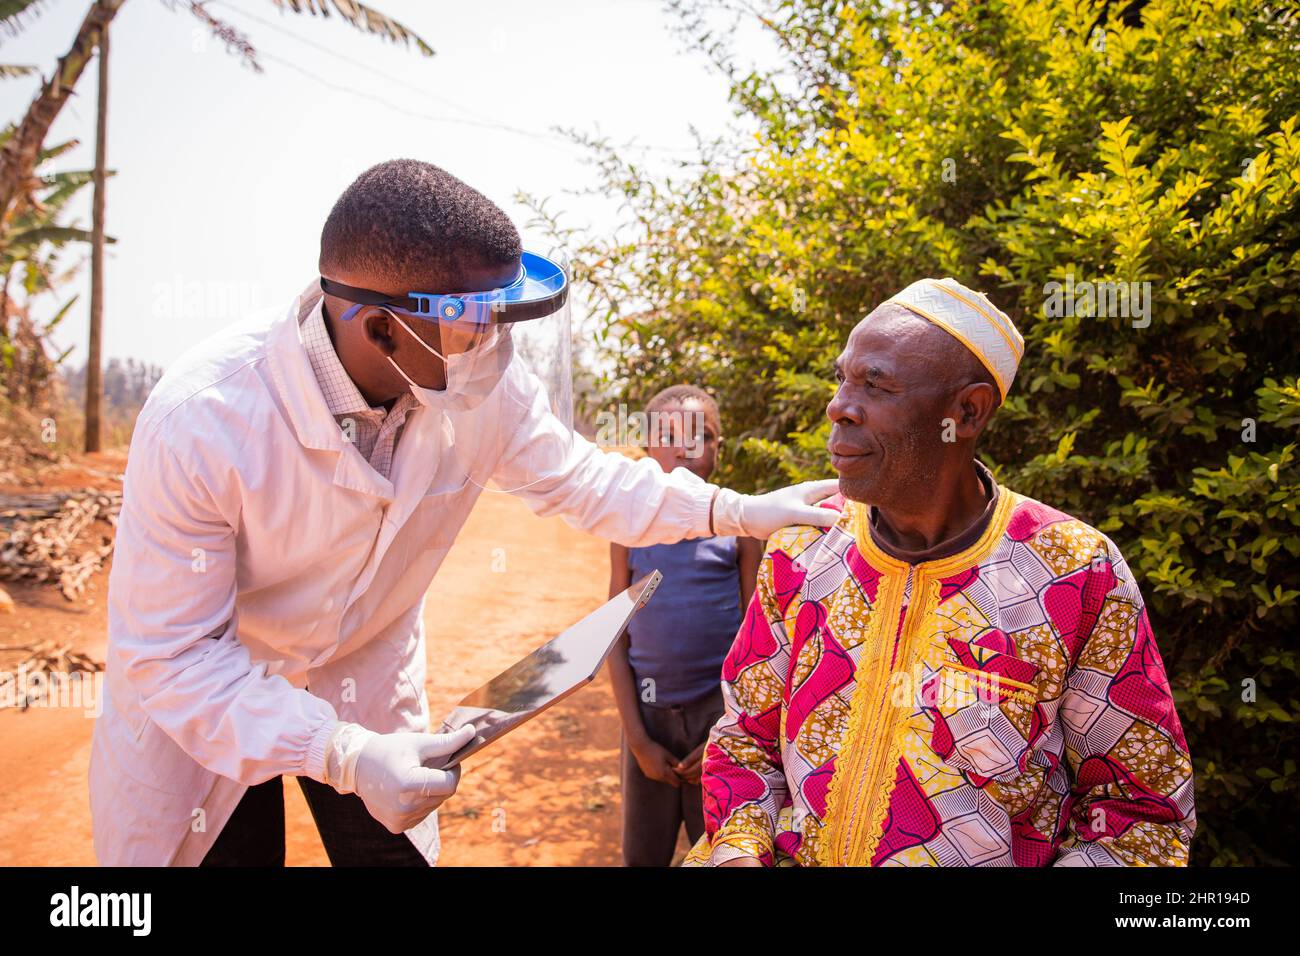 Ein afrikanischer Arzt besucht einen älteren Patienten und unterhält sich während der medizinischen Untersuchung. Health Care in africa Konzept Stockfoto